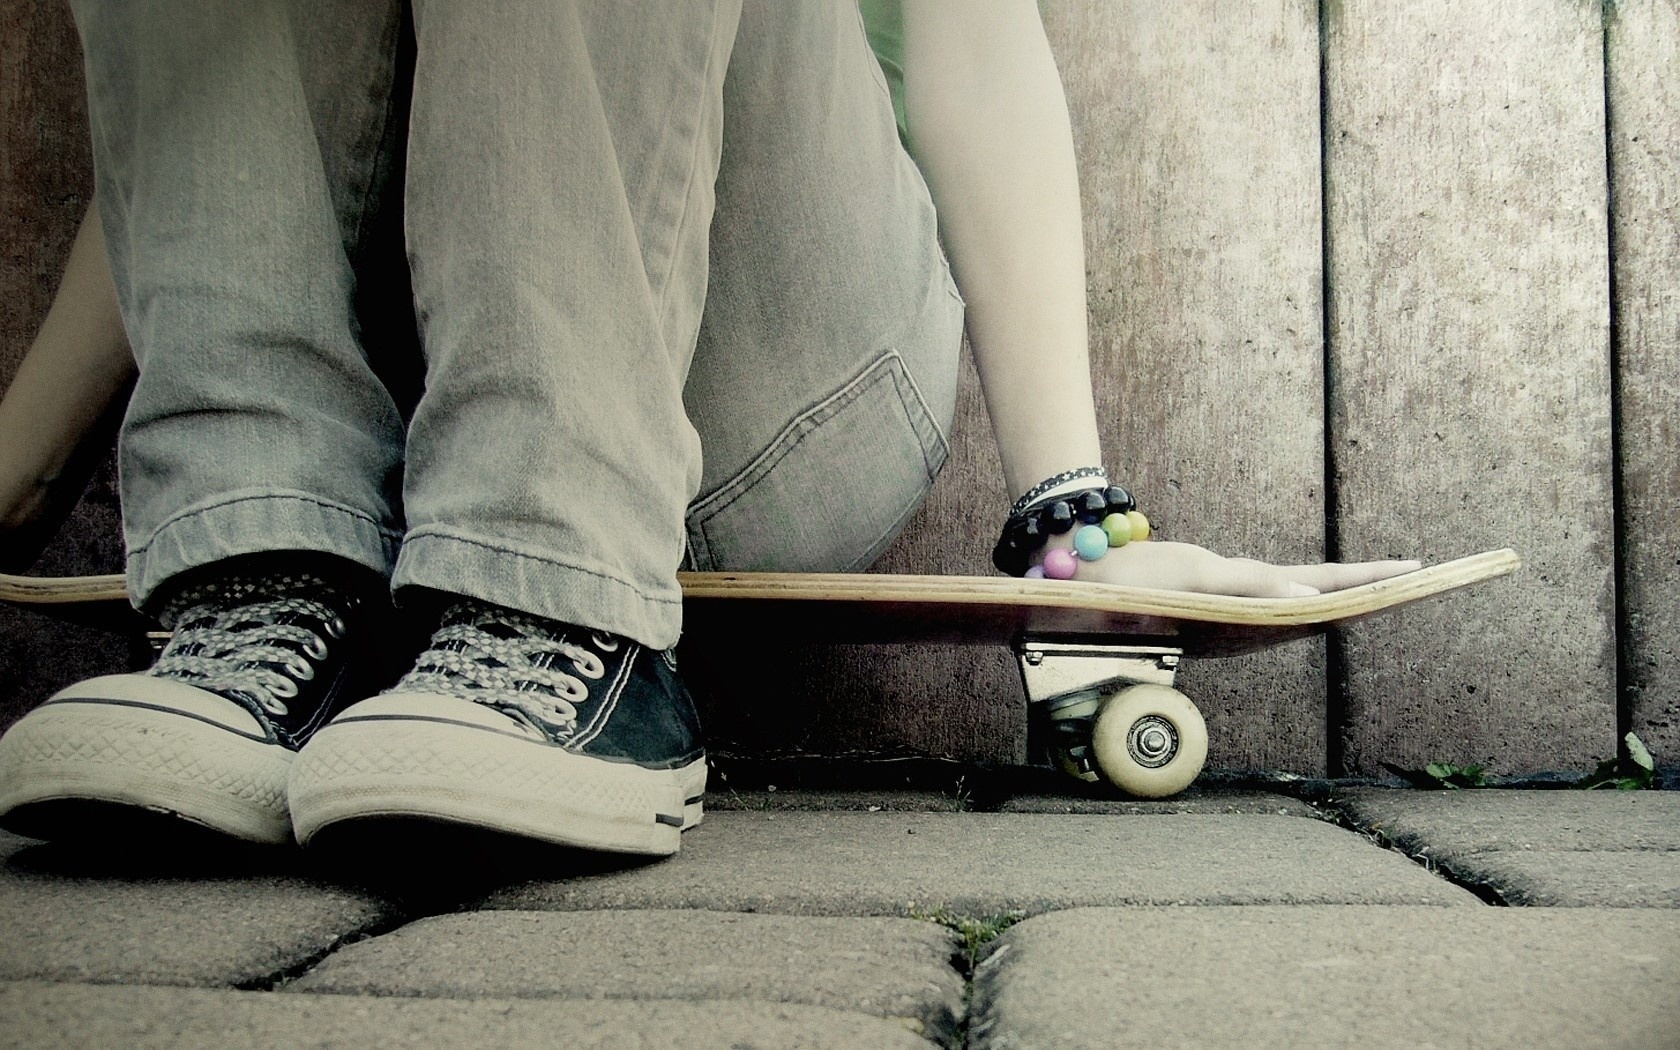 ragazza skateboard wallpaper,longboarding,skateboard,longboard,calzature,scarpa da skate